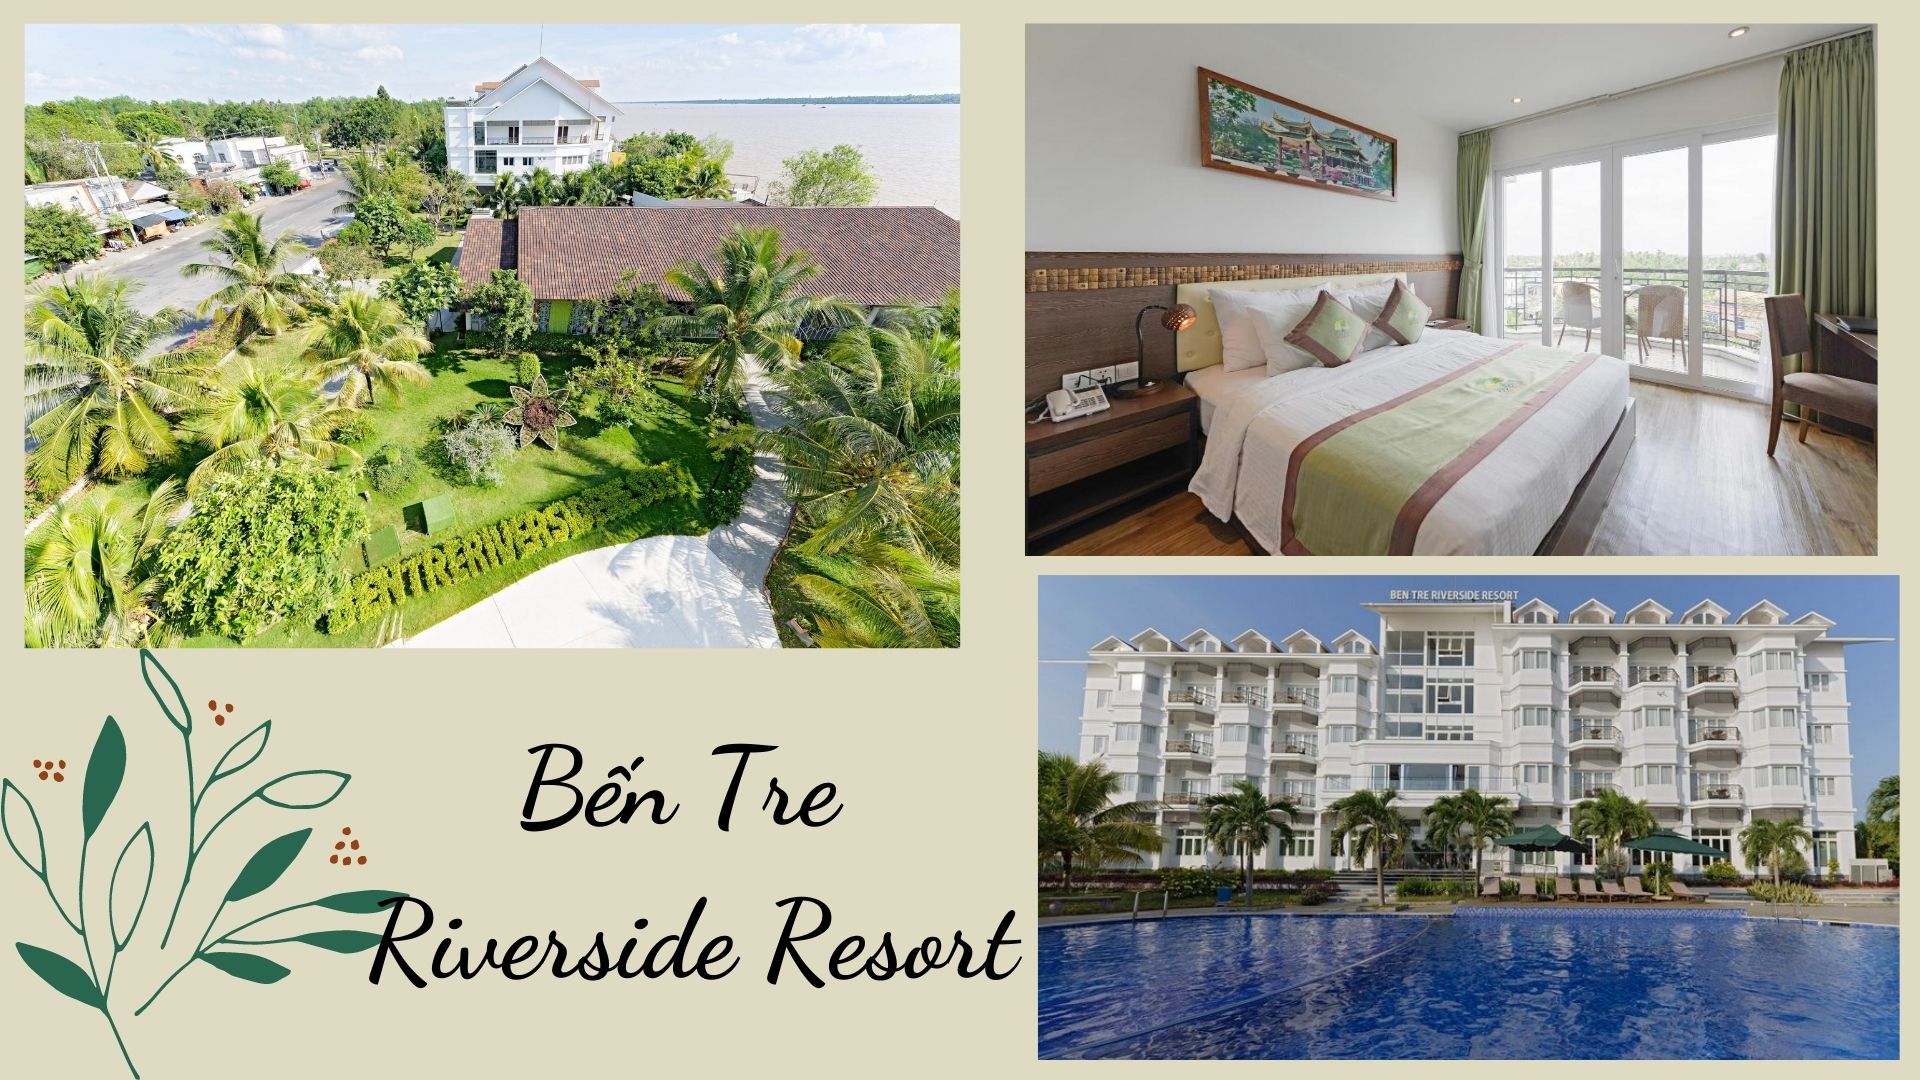 Top 11 Resort miền Tây giá rẻ view đẹp từ 3-4-5 sao đậm chất sông nước